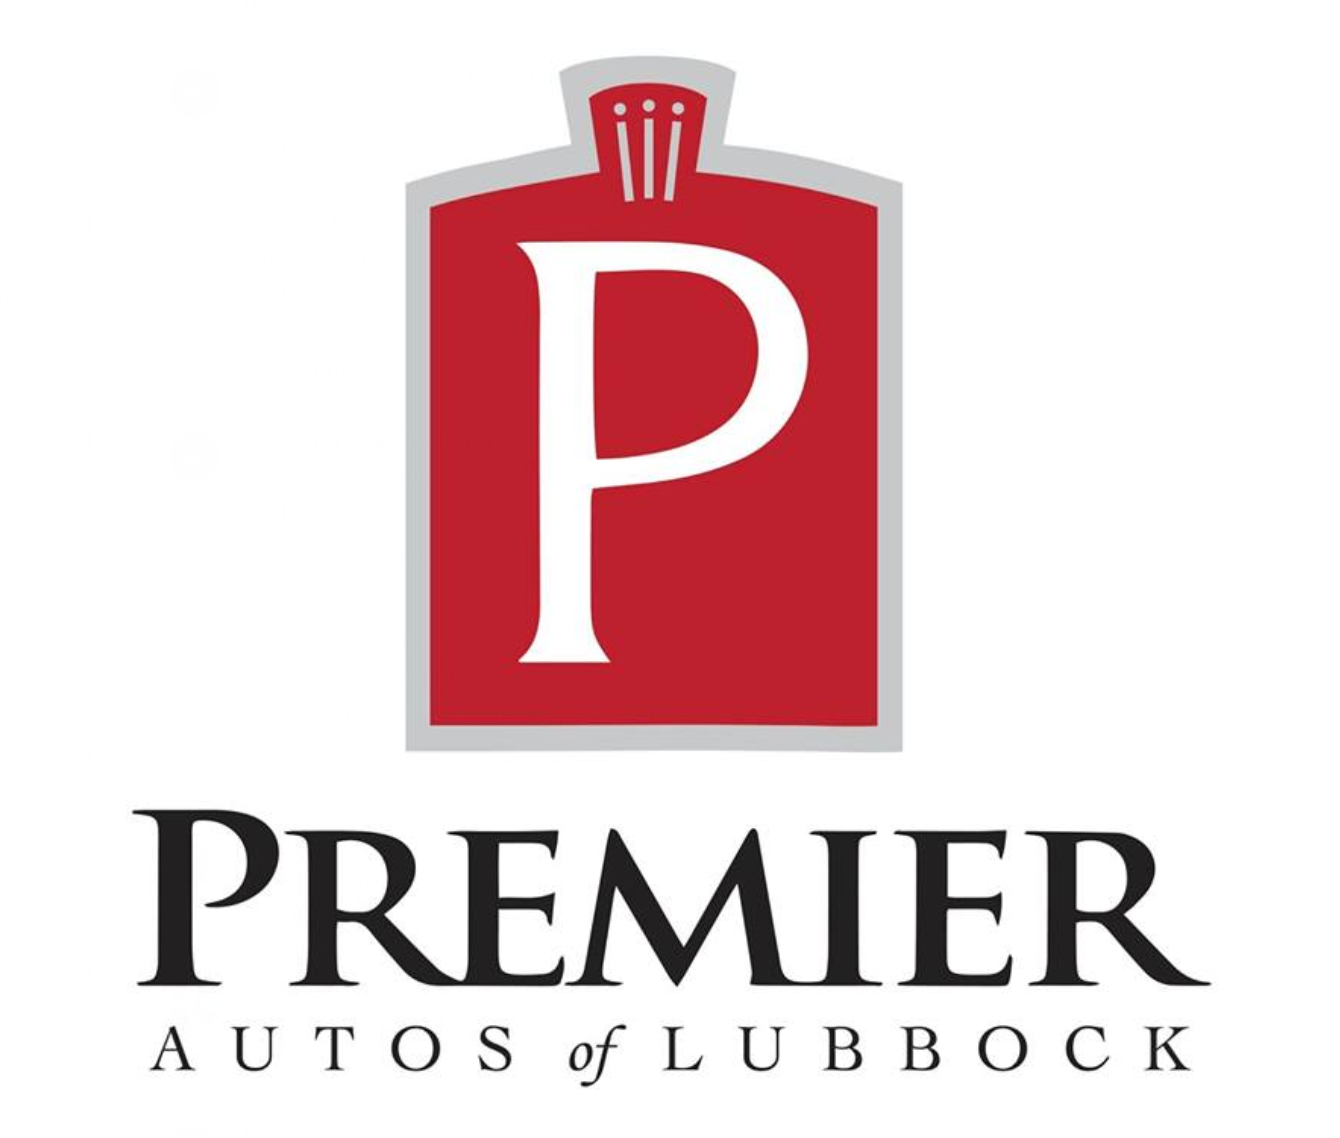 Premier Autos of Lubbock - Lubbock, TX: Read Consumer ...